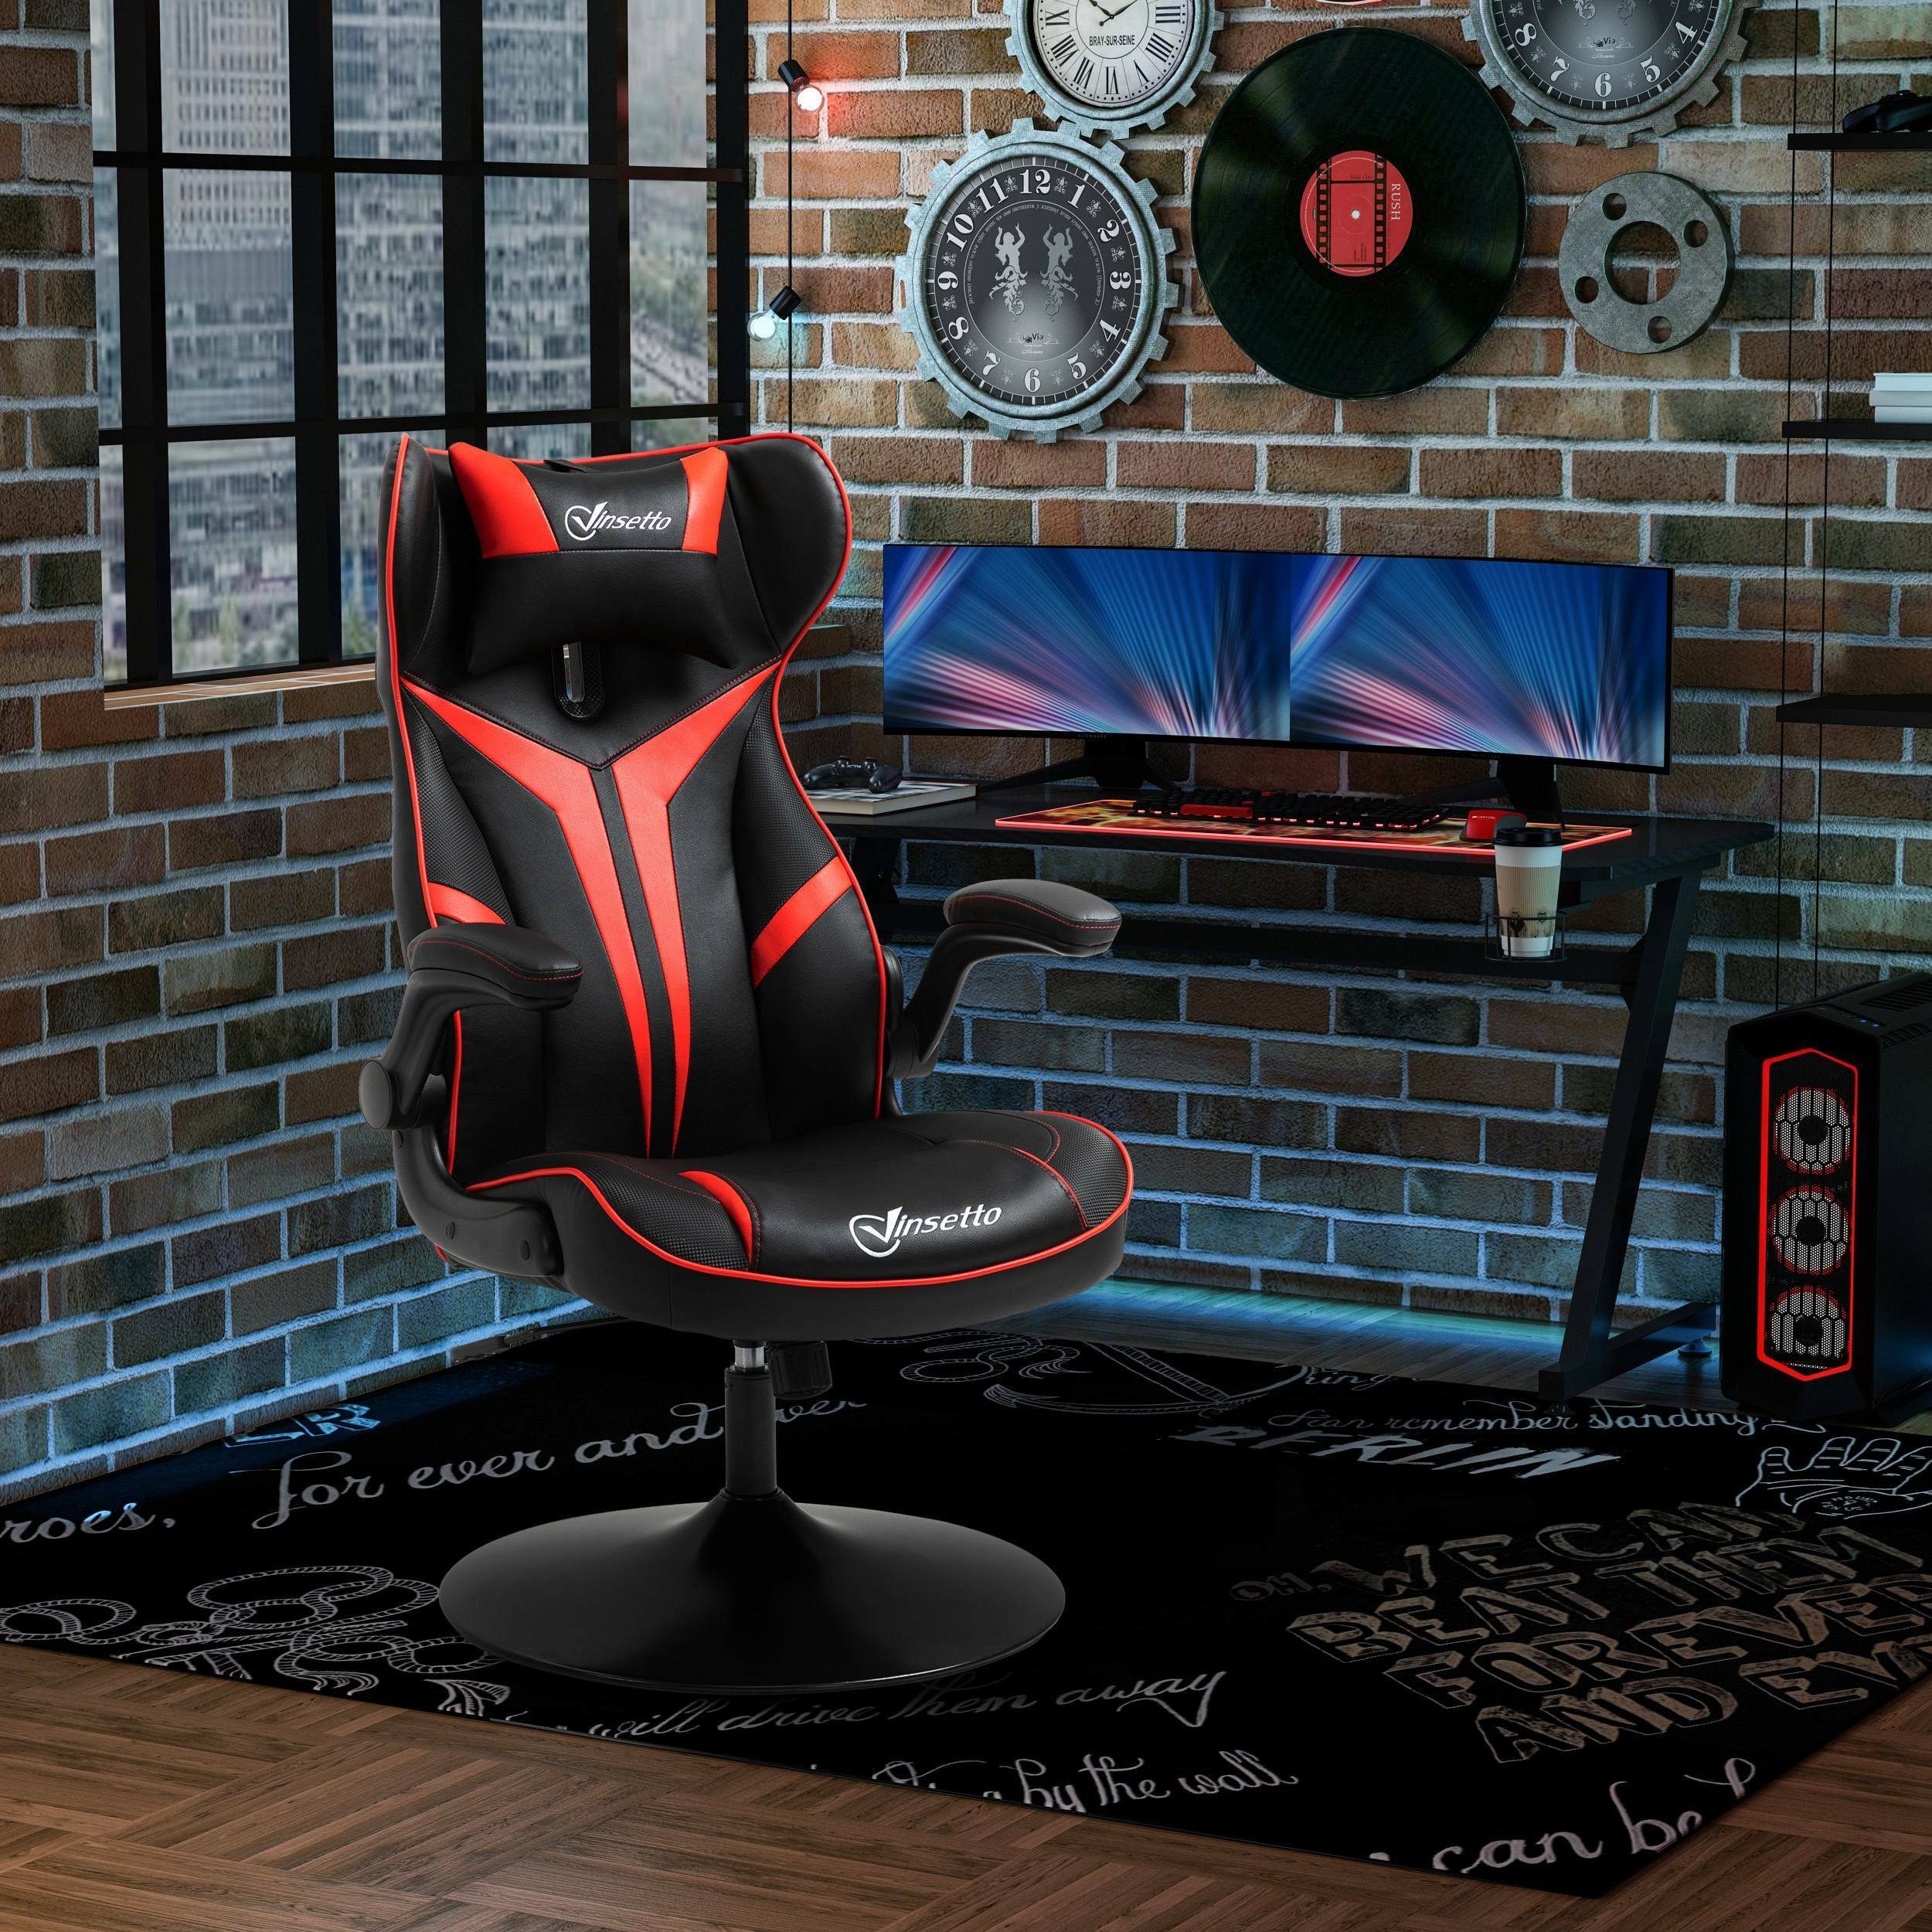 Schreibtischstuhl | ergonomisch Gaming Stuhl Vinsetto schwarz/rot schwarz/rot